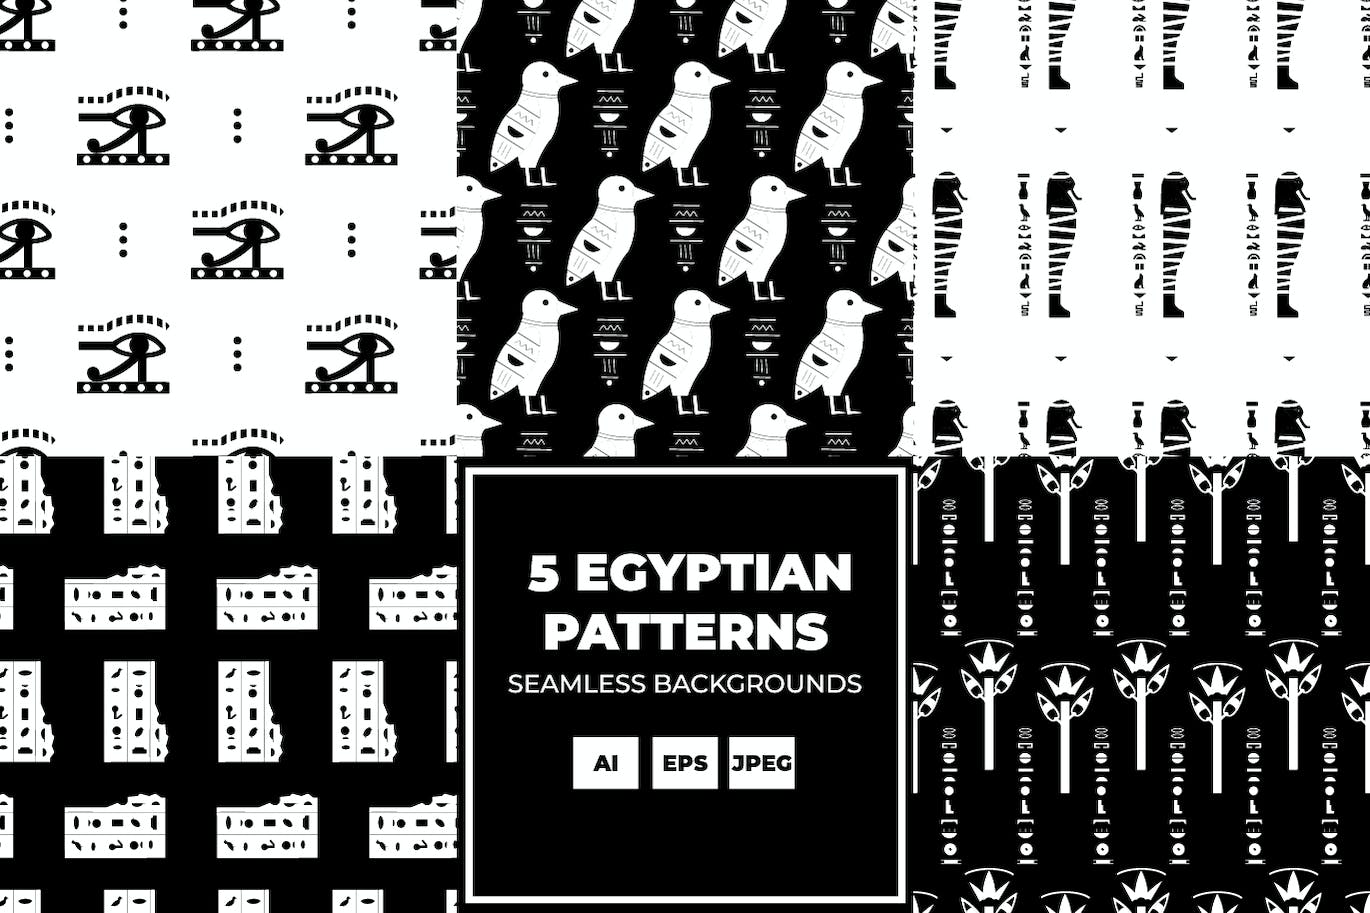 古埃及背景图案 (AI,EPS,JPG)